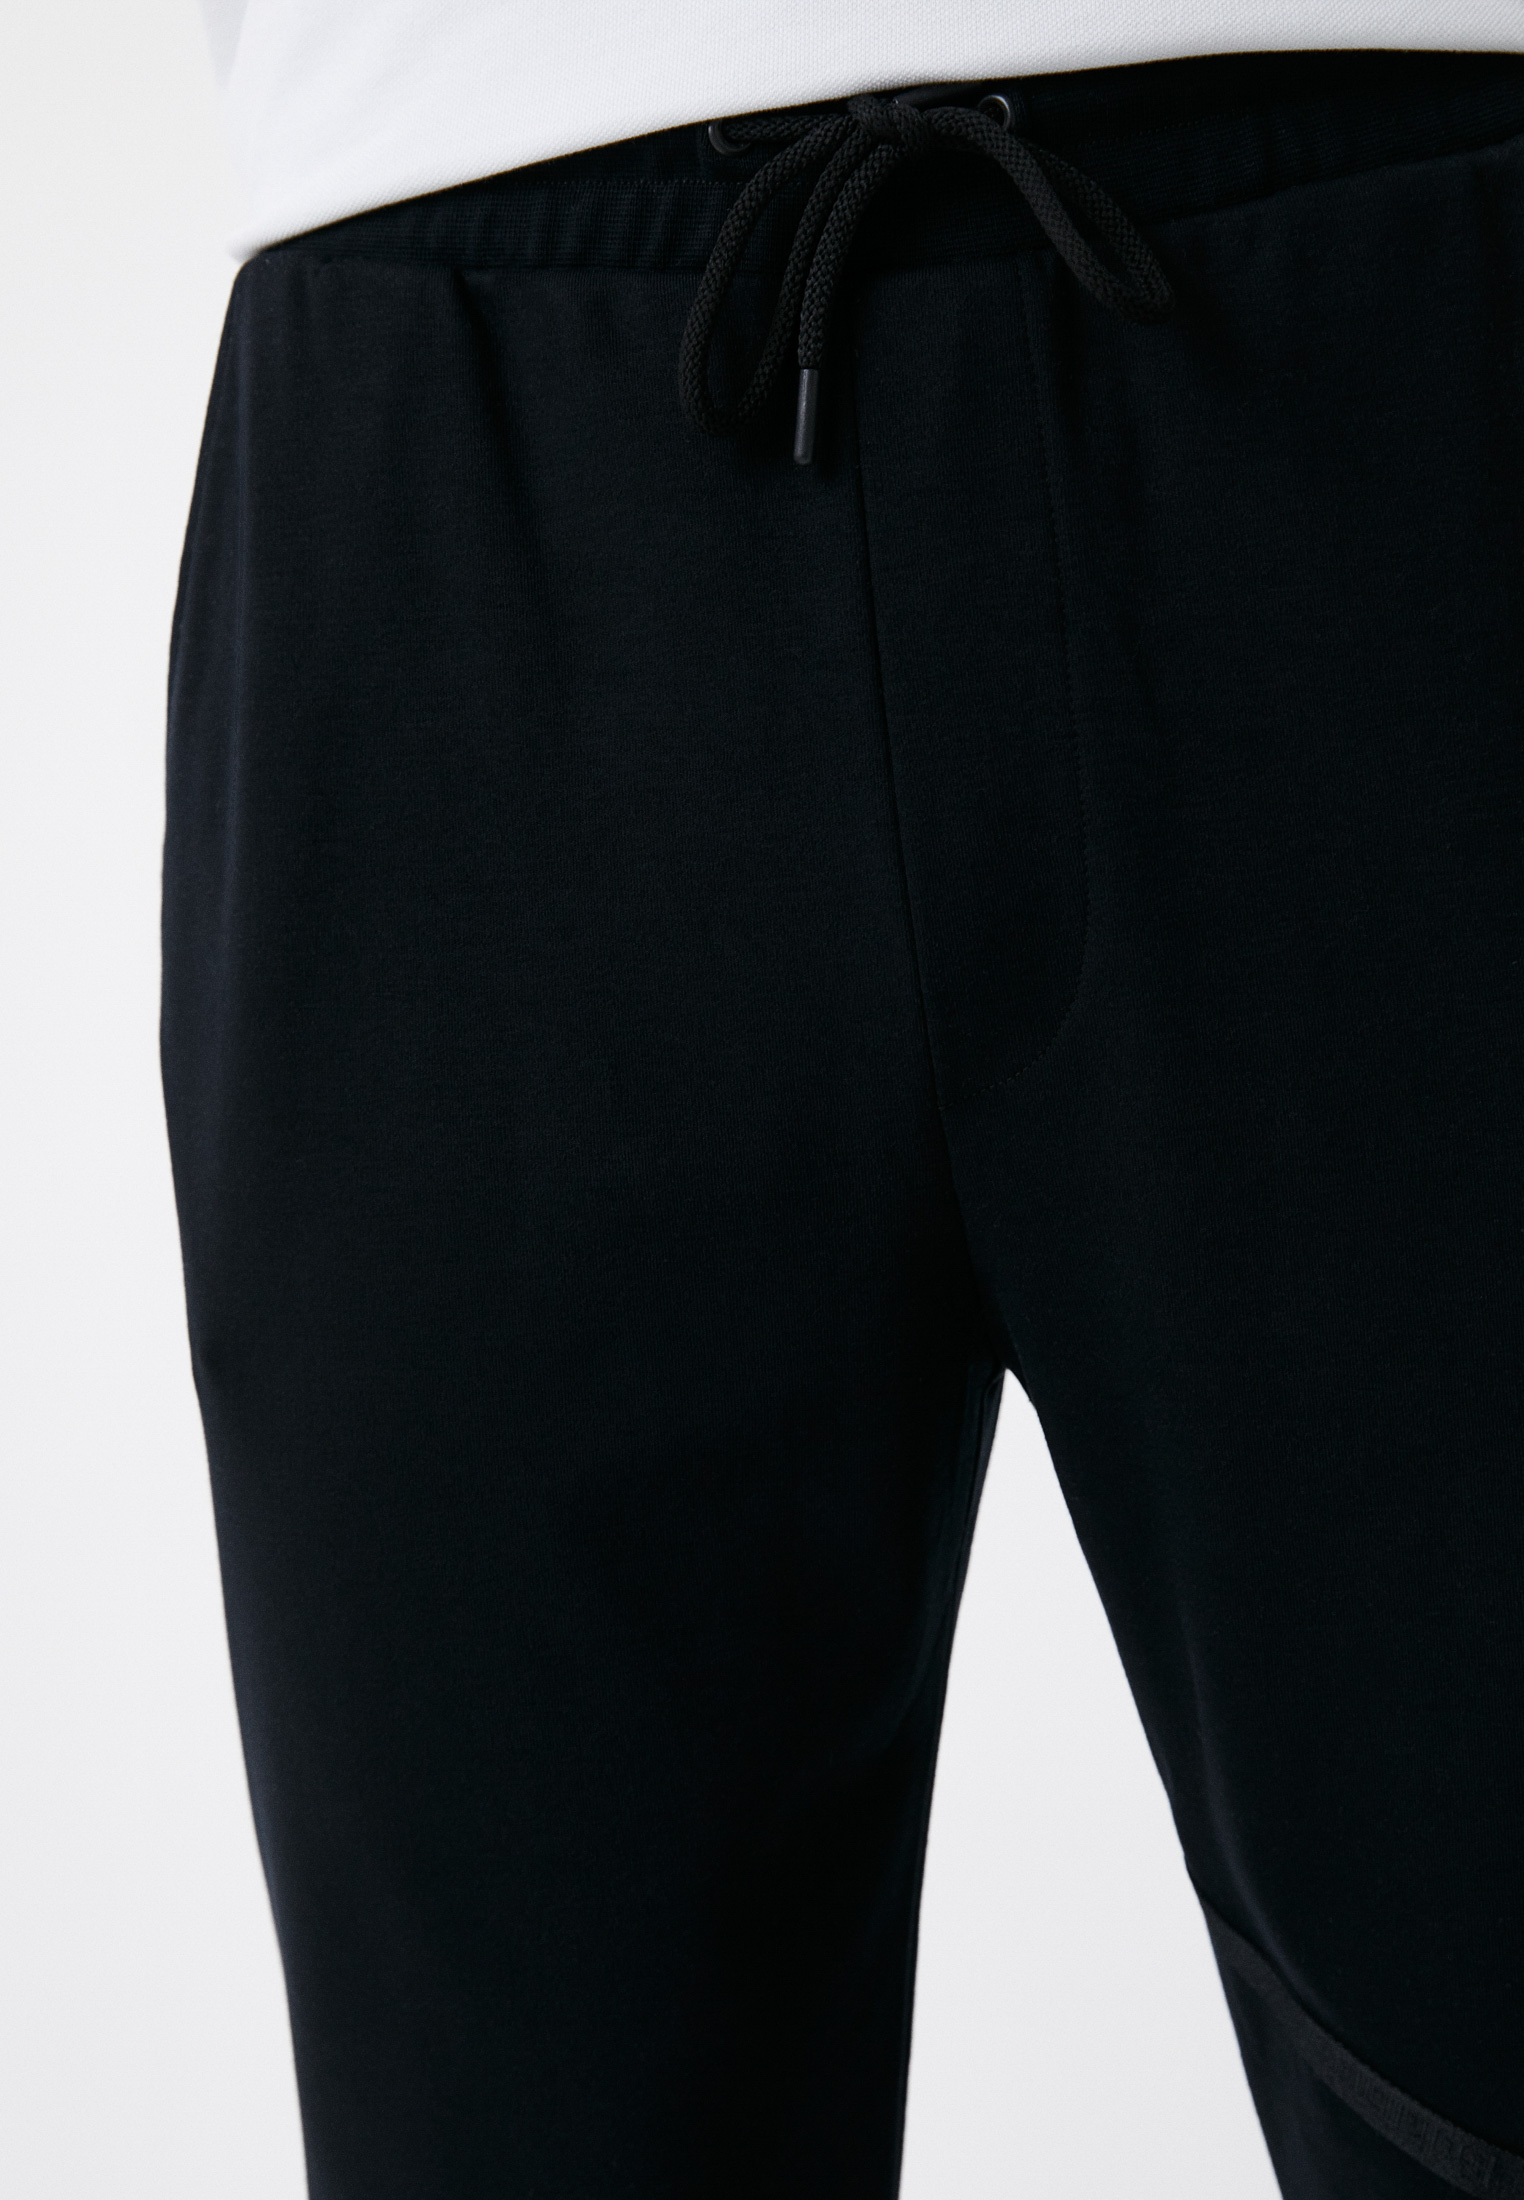 Мужские спортивные брюки Baldinini (Балдинини) M303: изображение 4